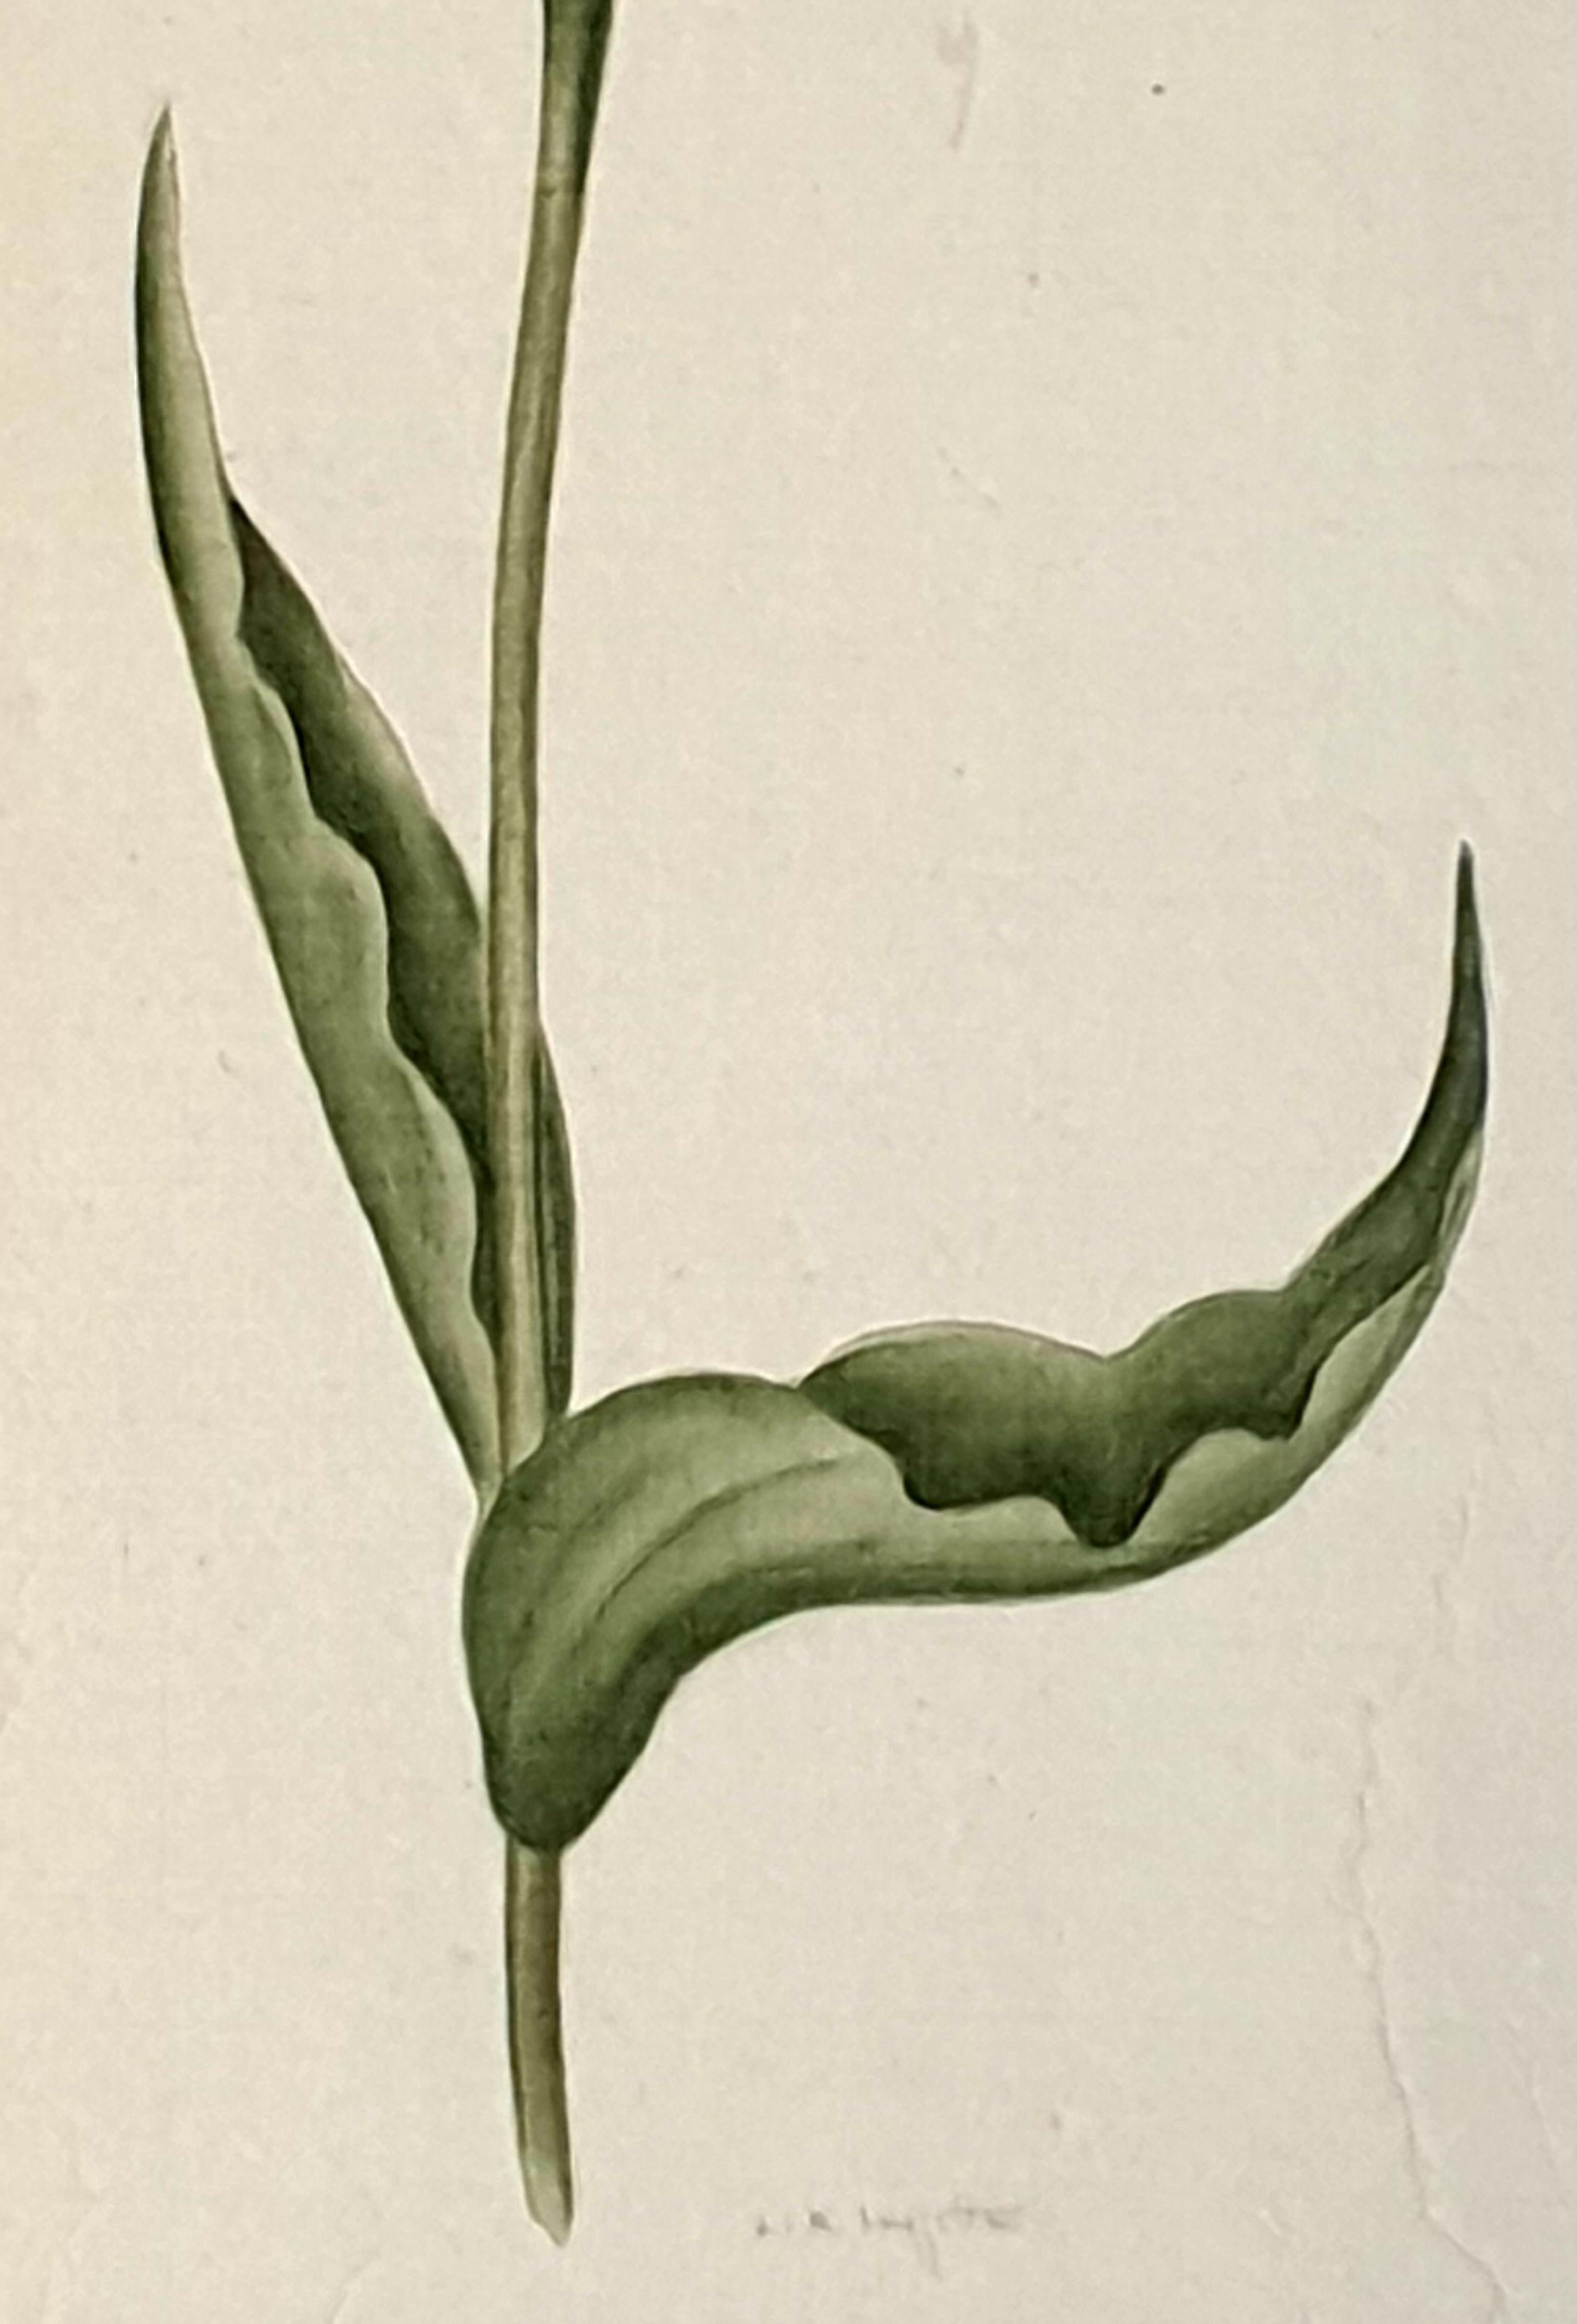 Études botaniques, aquarelles sur soie sur papier fait main, ensemble de trois tulipes - Réalisme Art par La Roche Laffitte